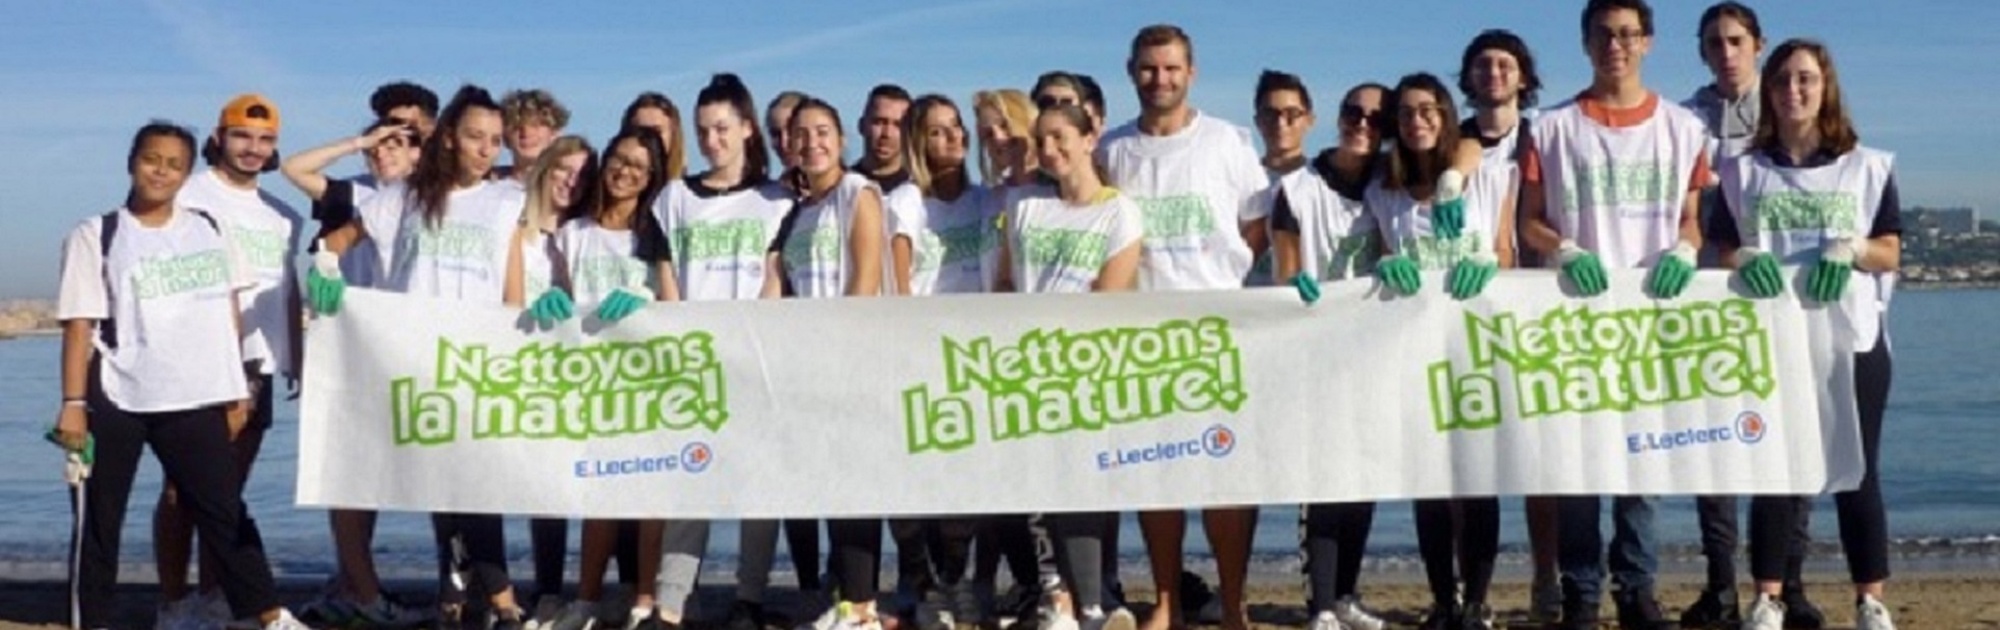 Nettoyons la nature!  - Lycée Polyvalent Marie Gasquet | Marseille St Barnabé 13012